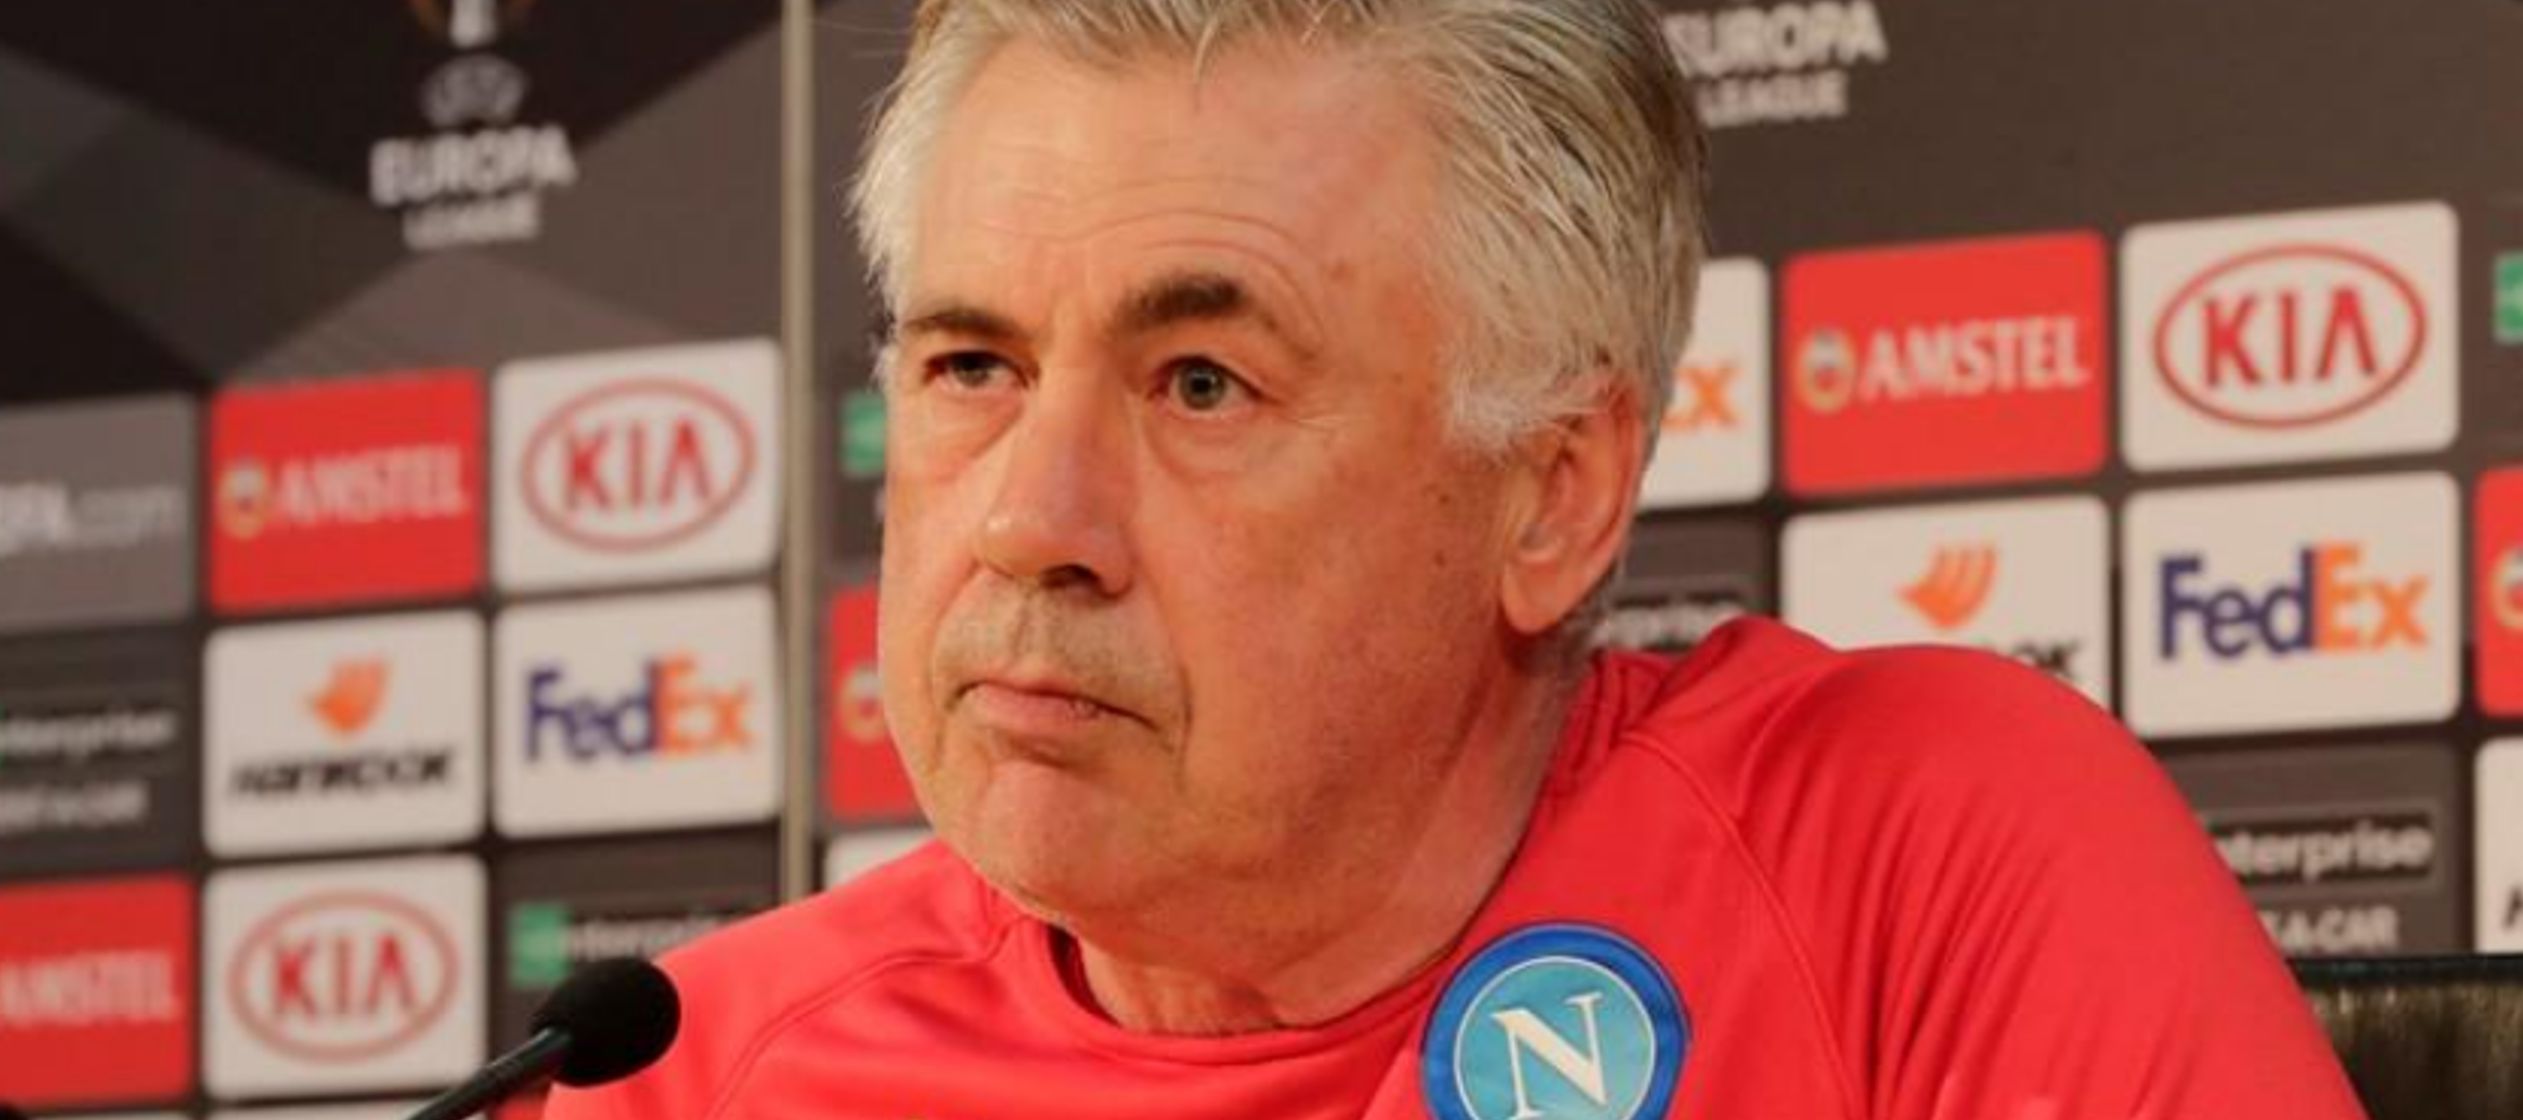 El entrenador del Napoli, Carlo Ancelotti, pidió “coraje, inteligencia y...